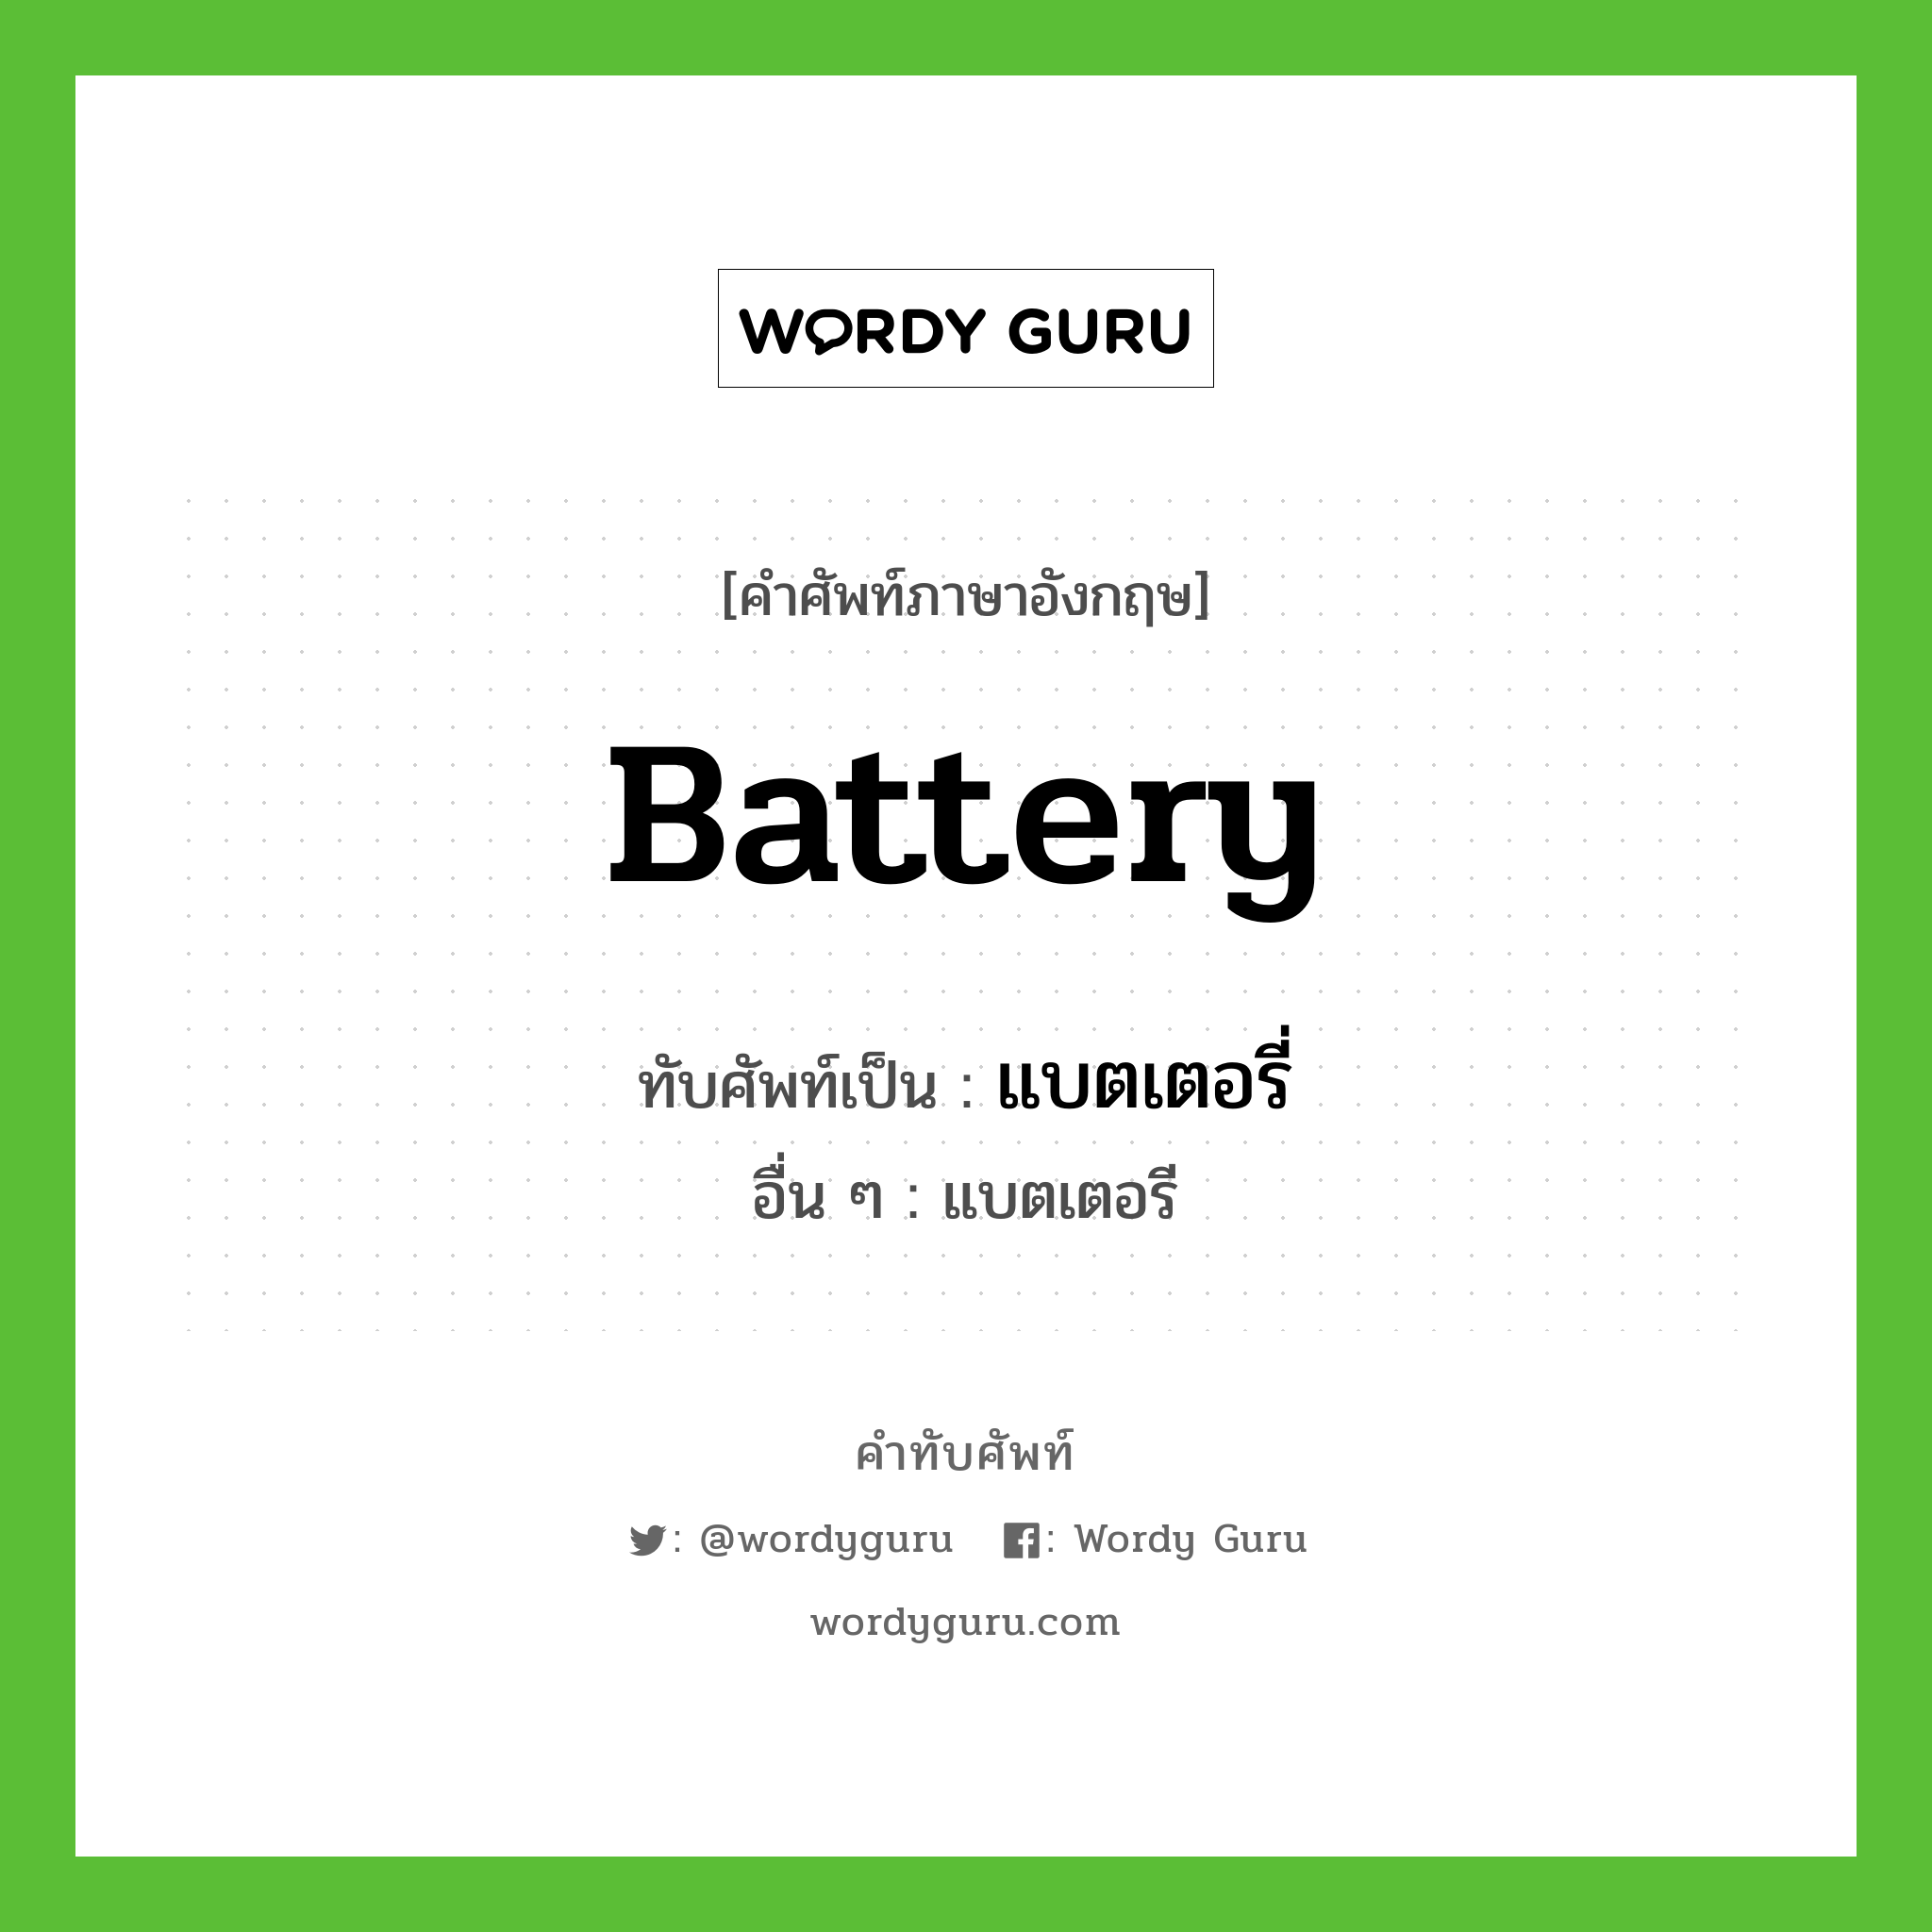 battery เขียนเป็นคำไทยว่าอะไร?, คำศัพท์ภาษาอังกฤษ battery ทับศัพท์เป็น แบตเตอรี่ อื่น ๆ แบตเตอรี